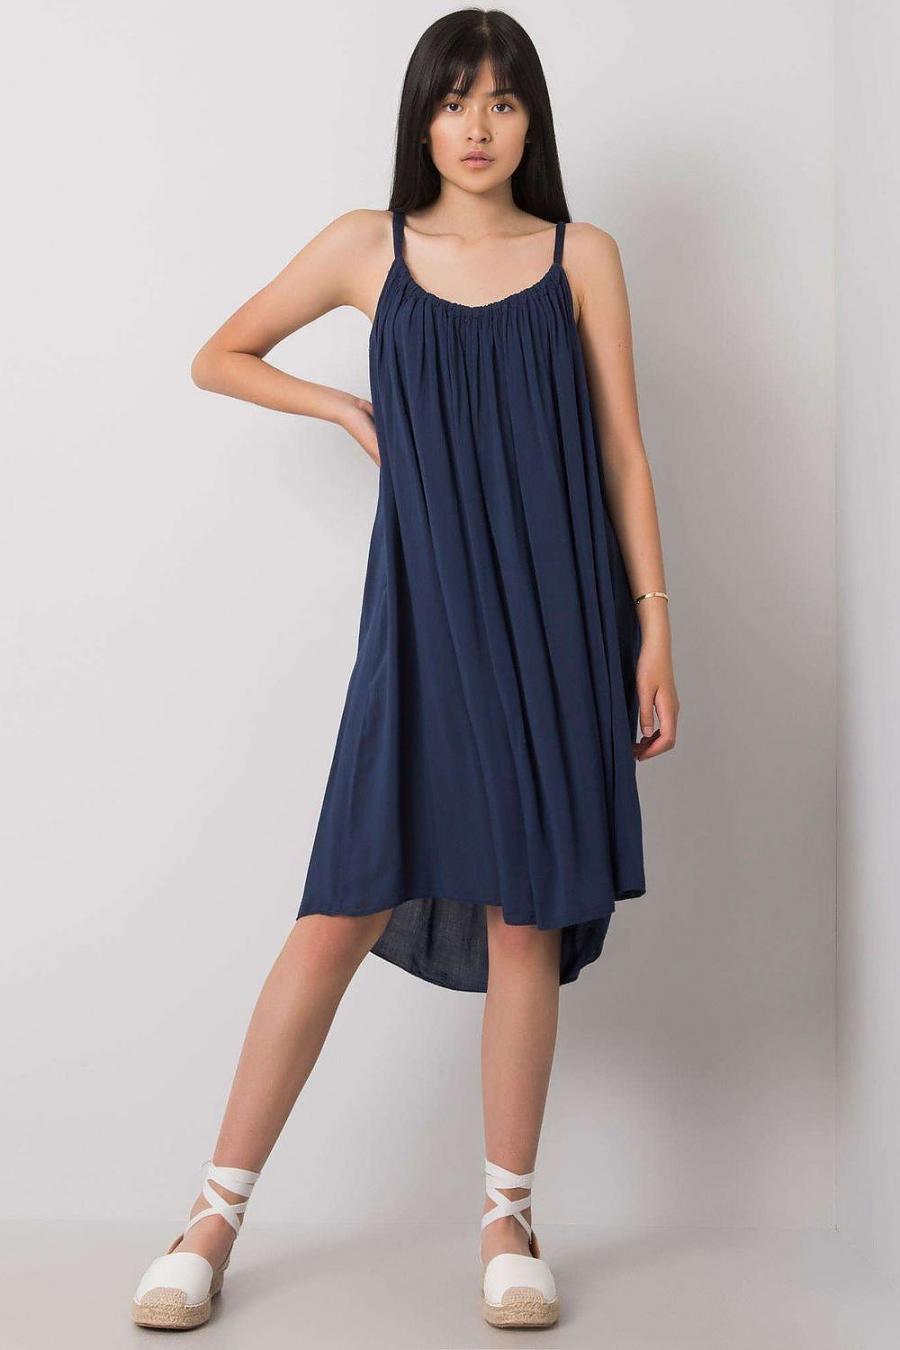 Ostatní značky šaty dámské 165030 - Tmavě modrá - velikost S